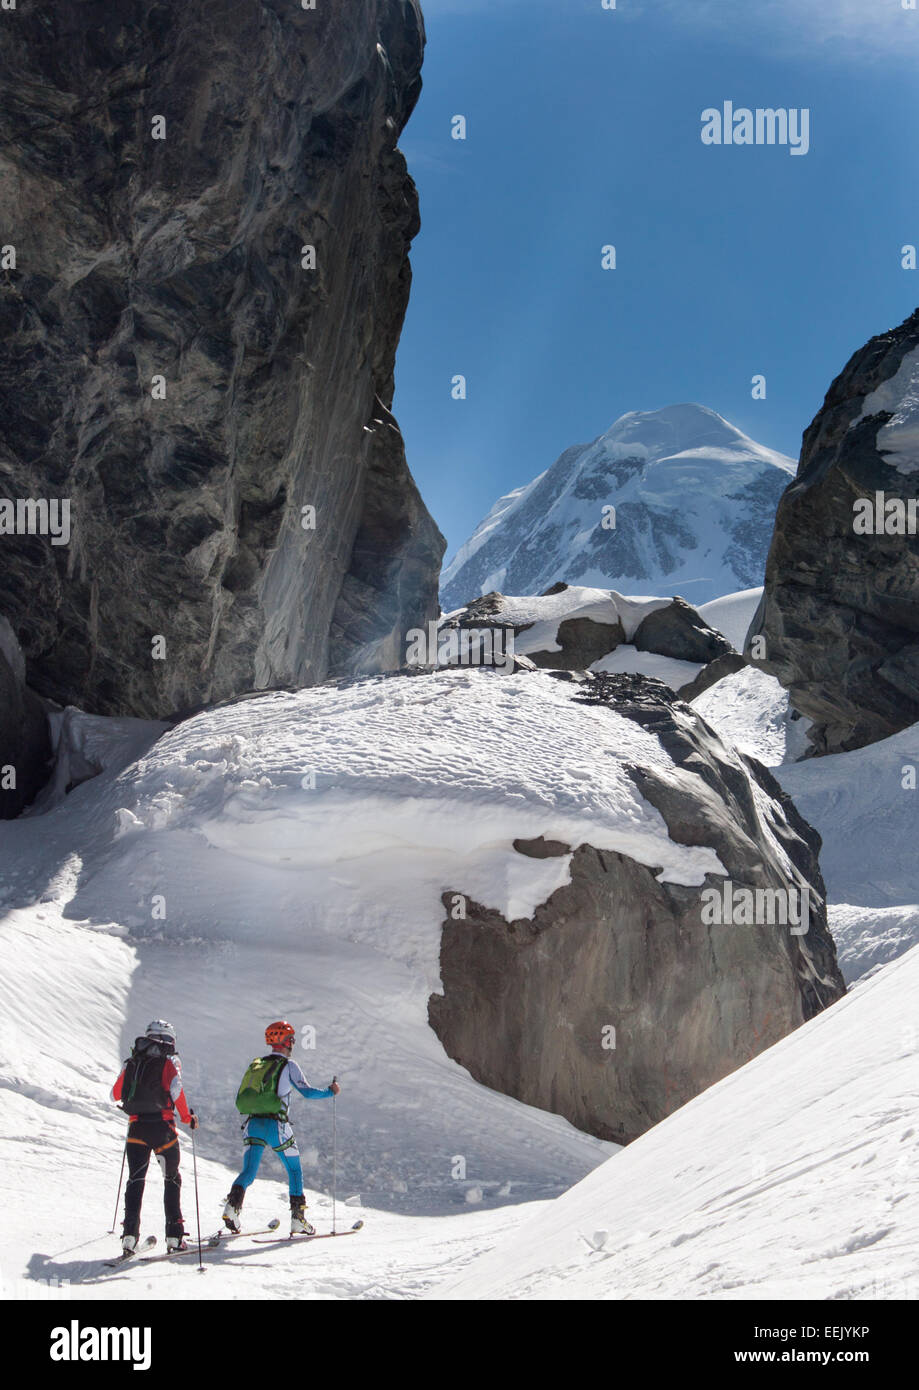 ski mountaineering, ski touring Stock Photo